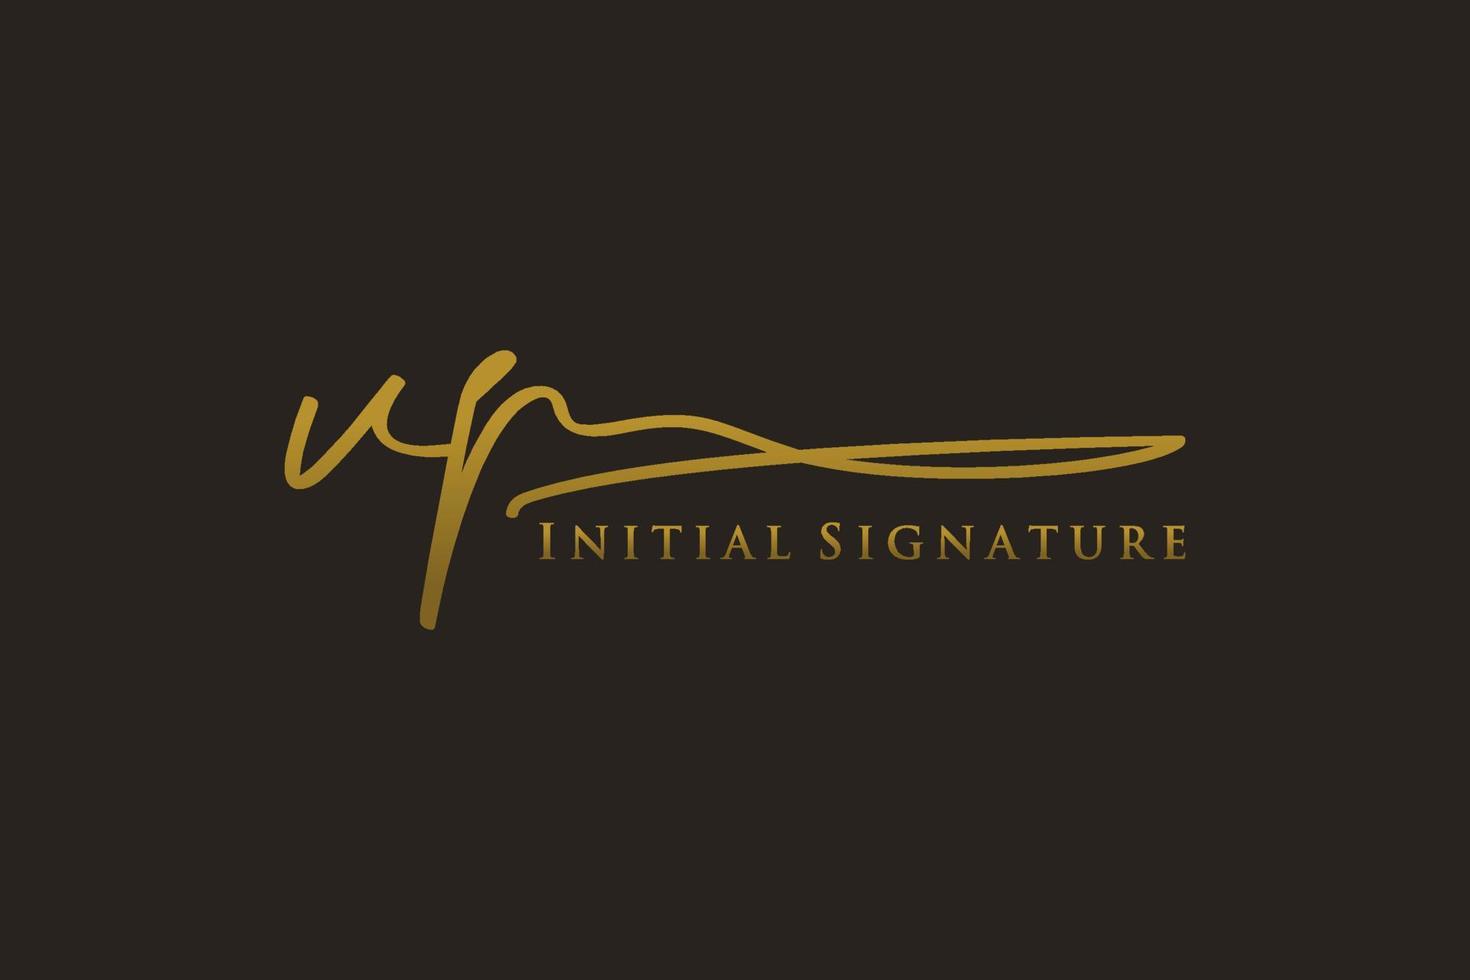 modèle de logo de signature de lettre initiale vp logo de conception élégante. illustration vectorielle de calligraphie dessinée à la main. vecteur